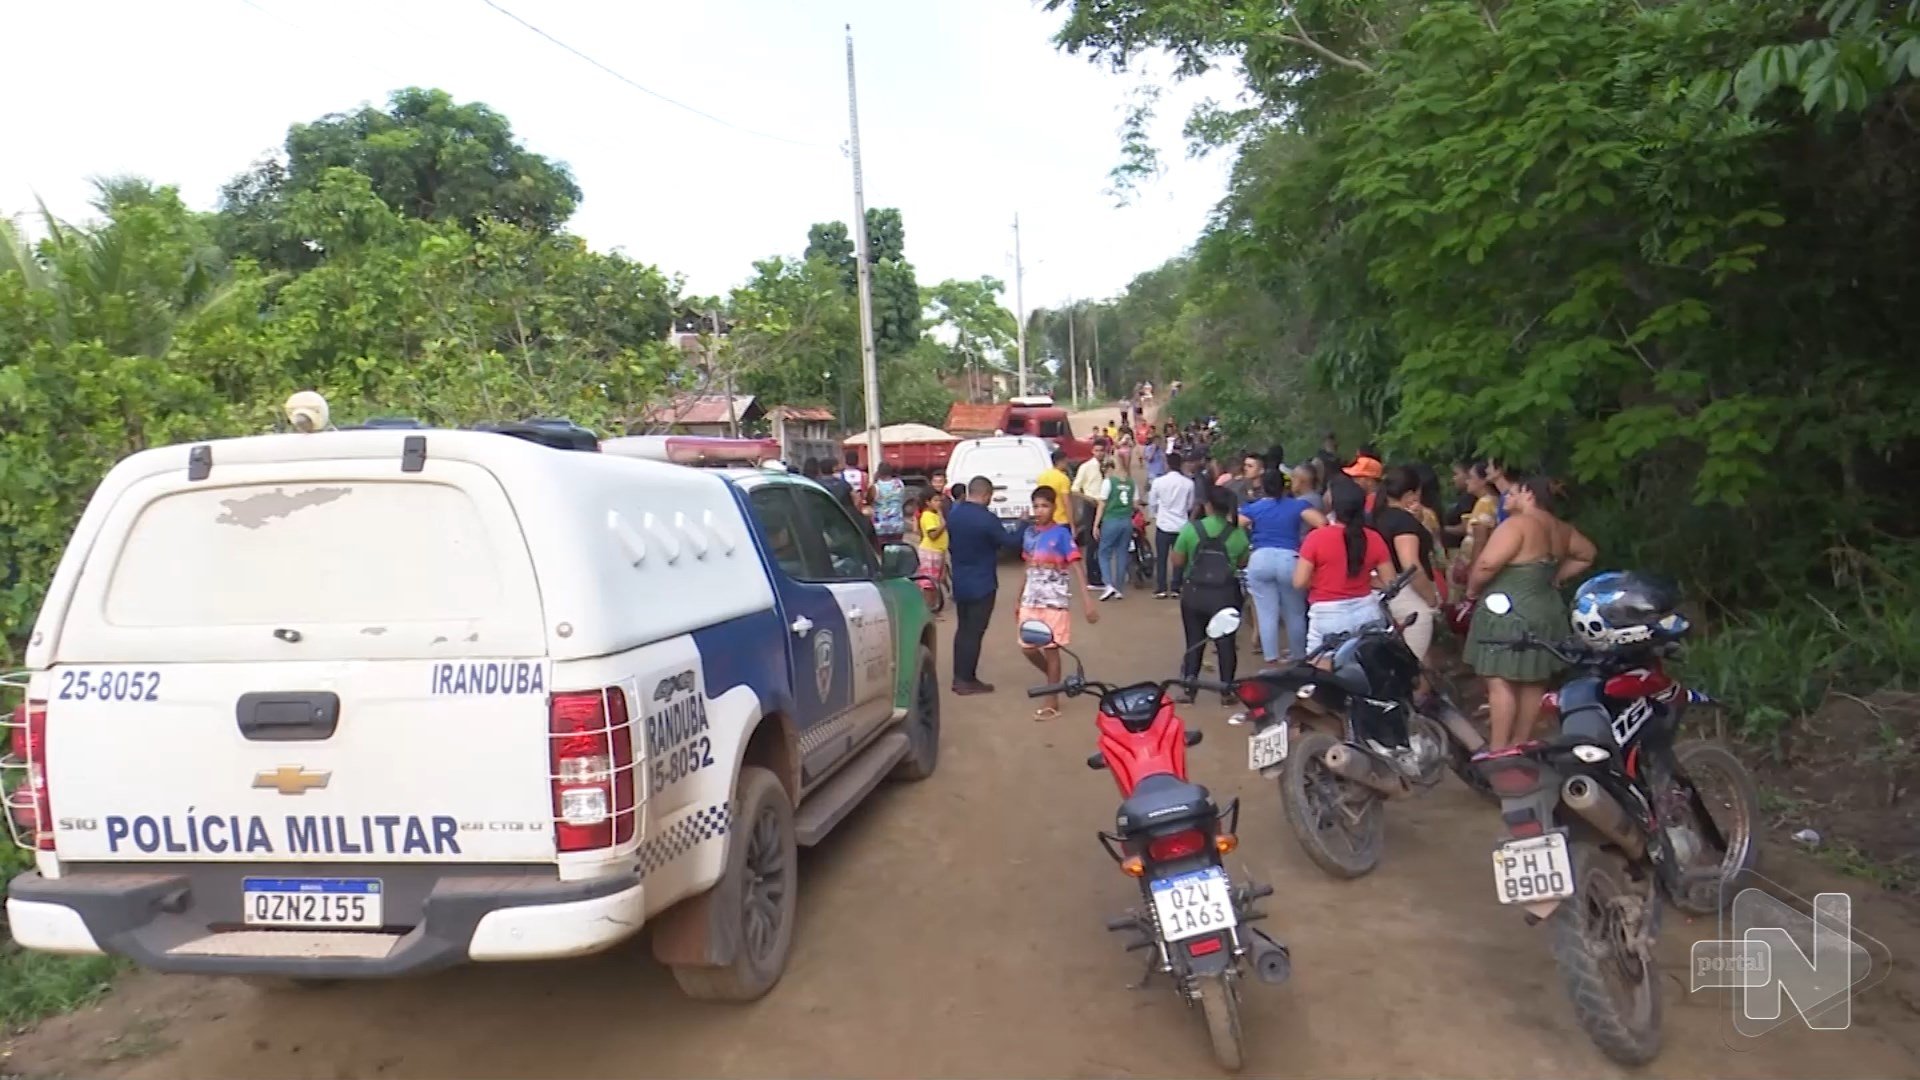 VÍDEO: três homens são mortos durante entrega no interior do Amazonas